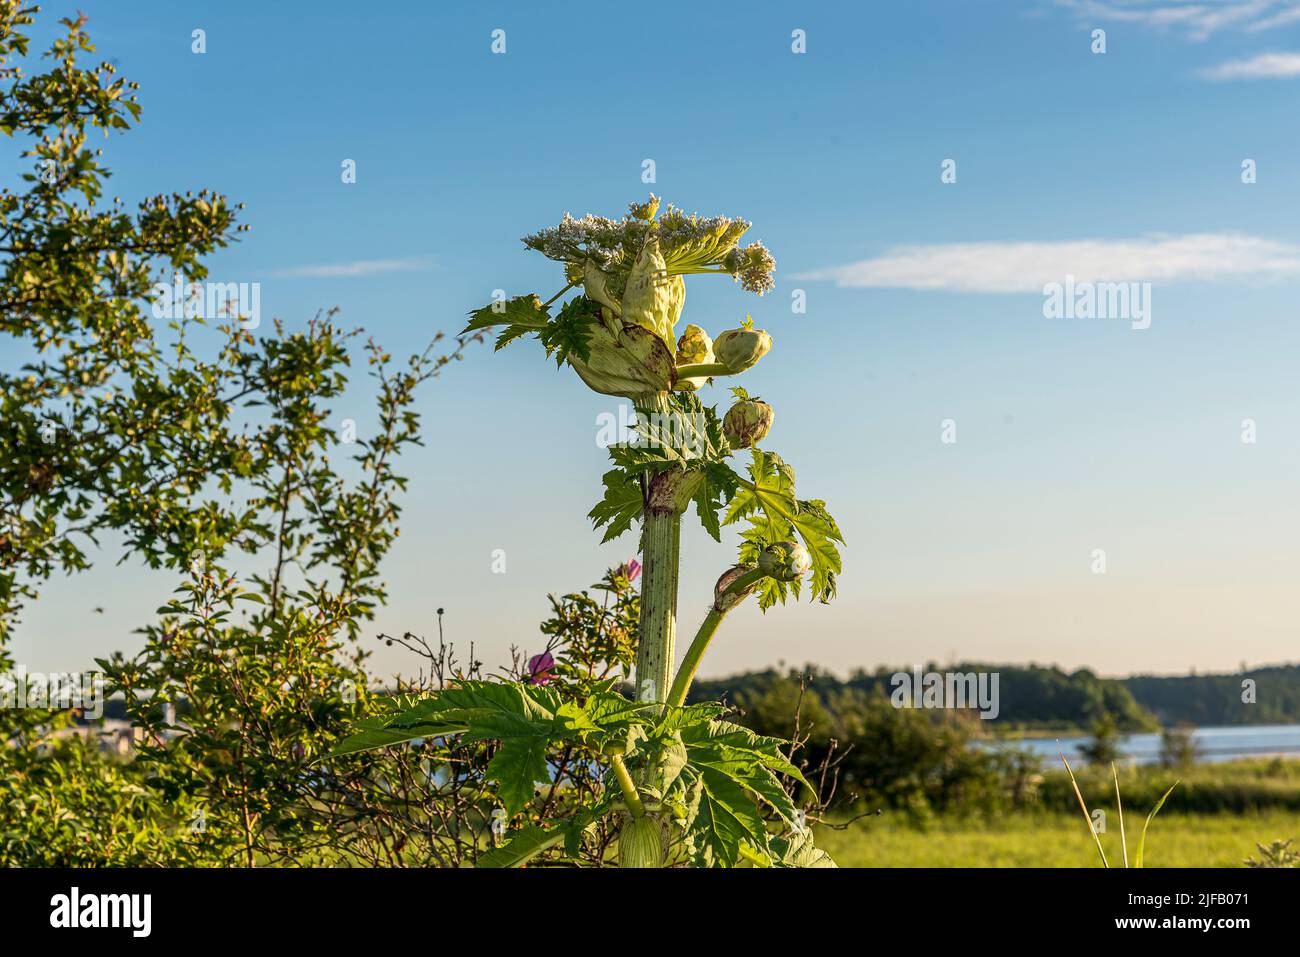 L'alga gigante è una pianta velenosa e invasiva nella natura dansih, Danimarca, 29 giugno 2022 Foto Stock